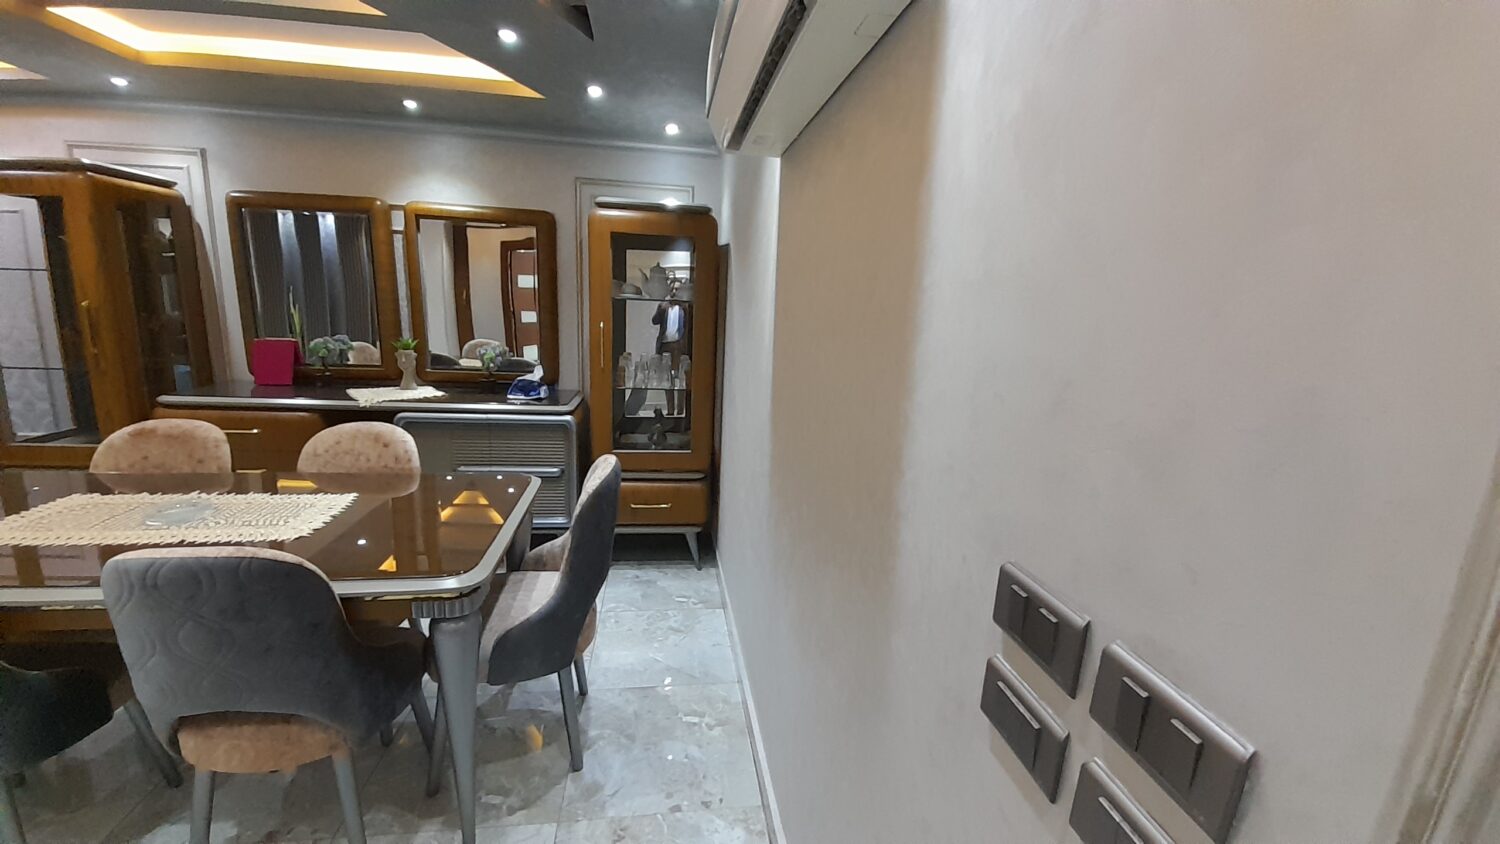 شقة مفروشة للايجار فى شارع شهاب 250م فرش جديد فندقية